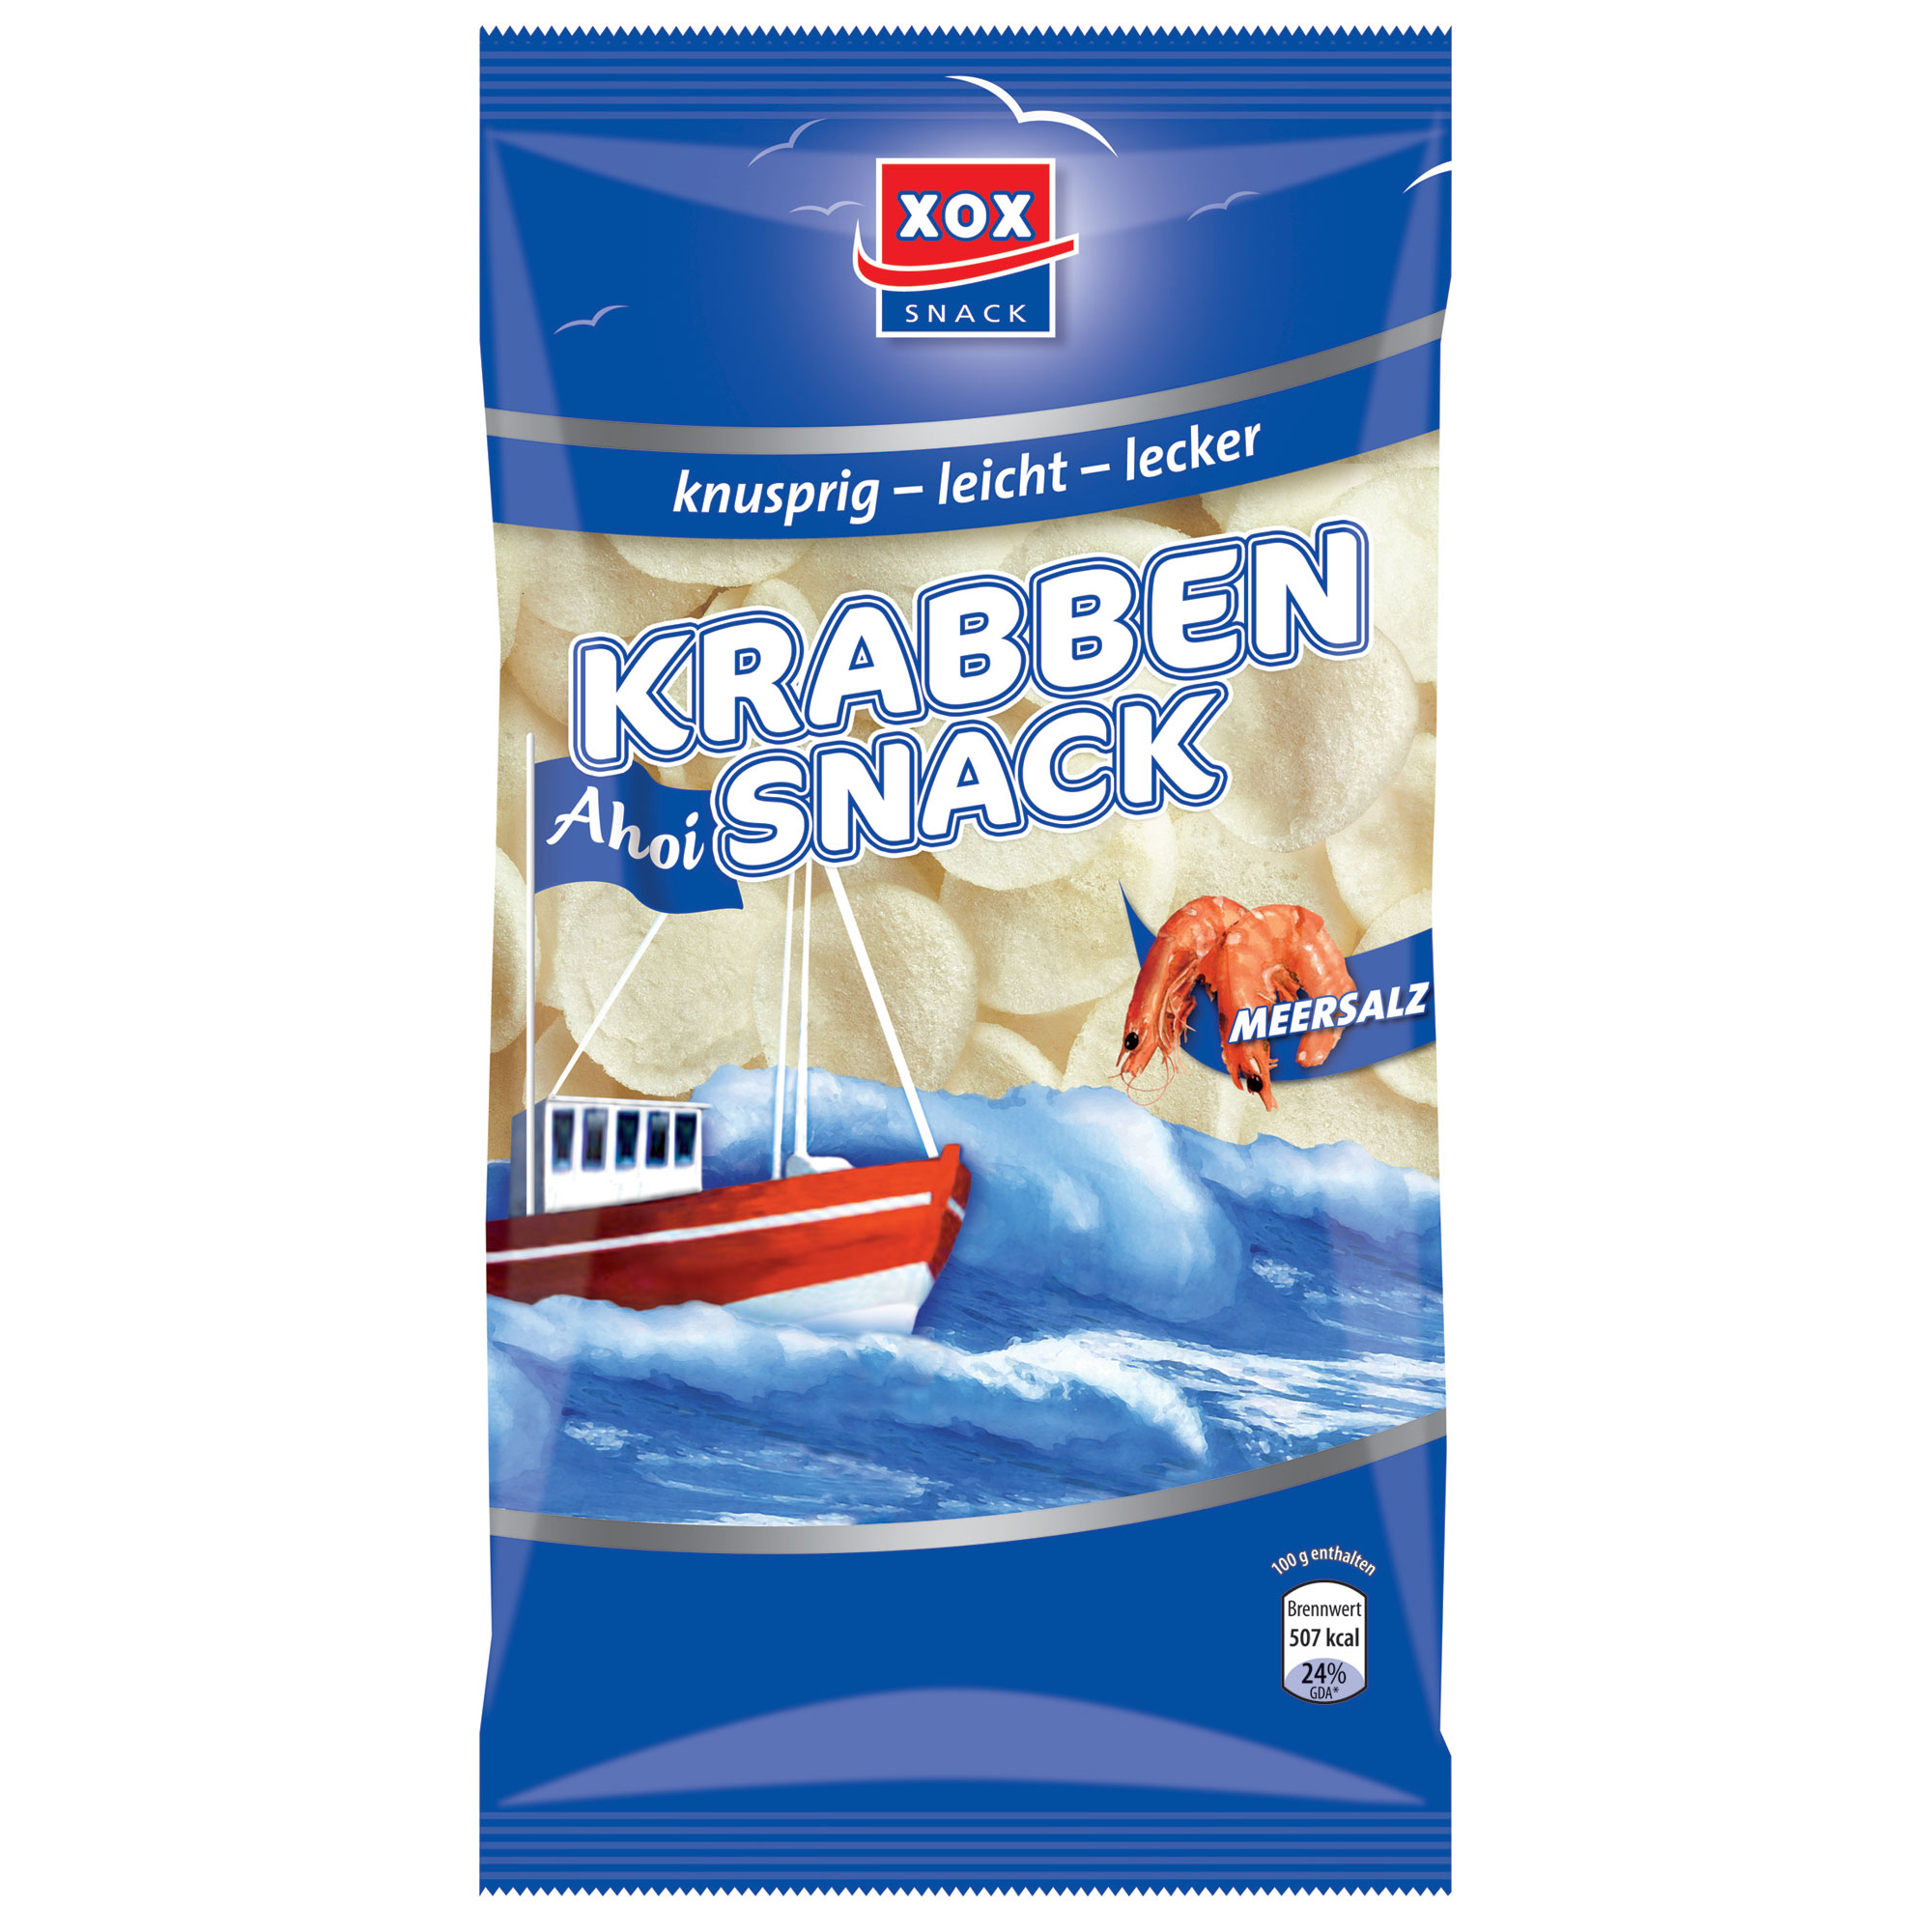 XOX Krabben Snack | Online kaufen im World of Sweets Shop